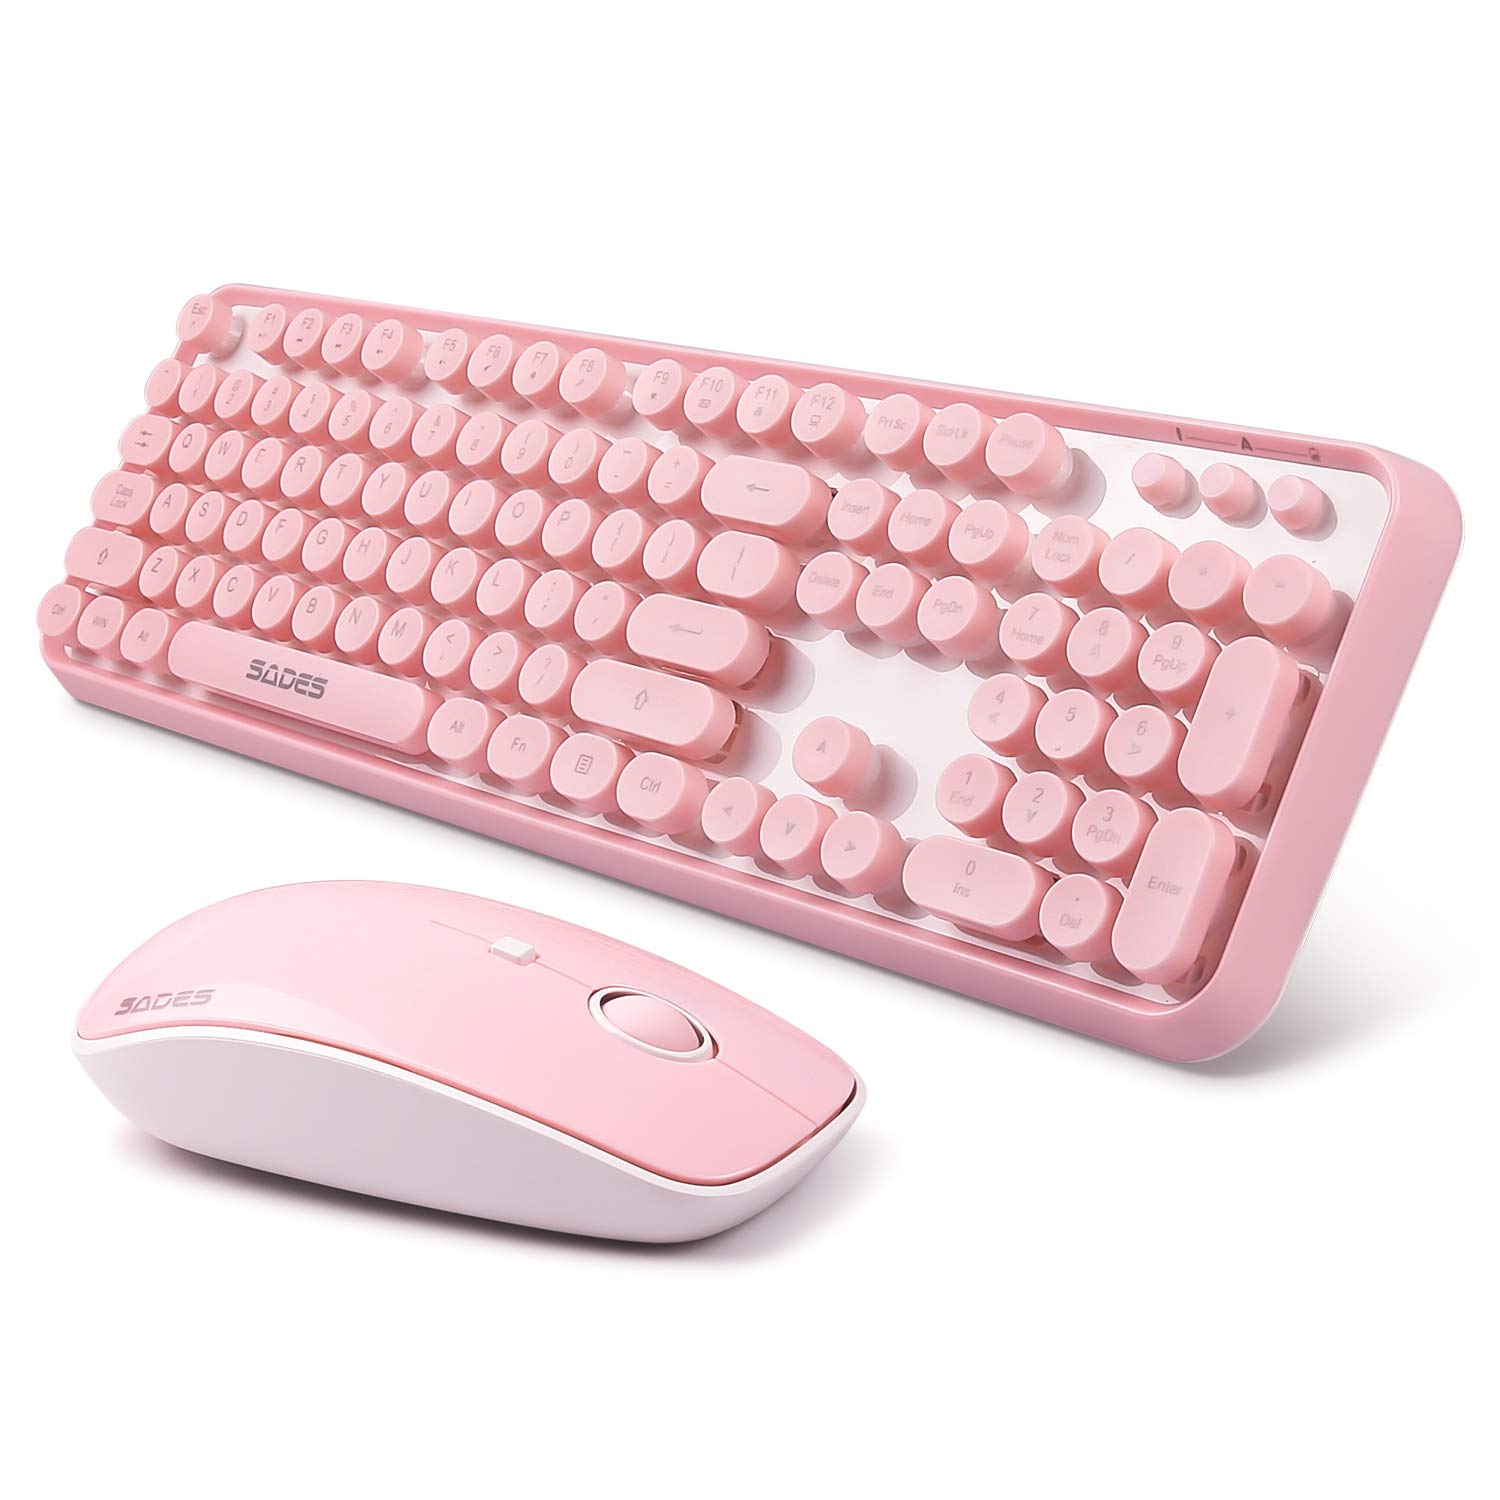 Компьютерные мыши и клавиатуры. Клавиатура Логитек беспроводная розовая. Лоджитек клавиатура розовая. Logitech розовая клавиатура. Клавиатура Логитек беспроводная розовая лайфстайл.